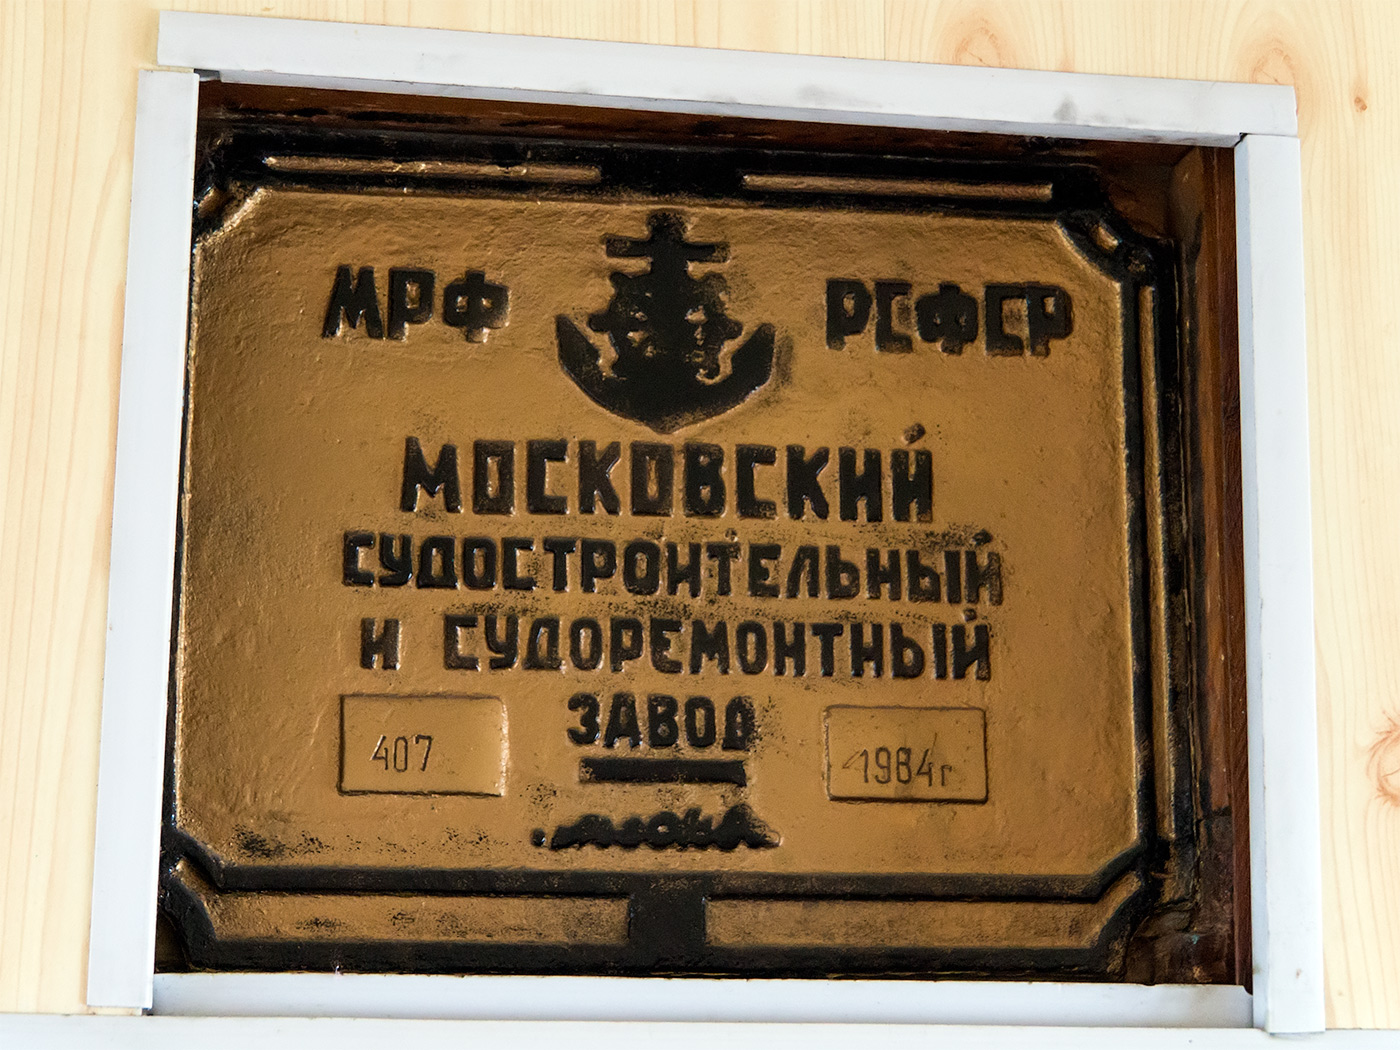 ОМ-136. Shipbuilder's Makers Plates